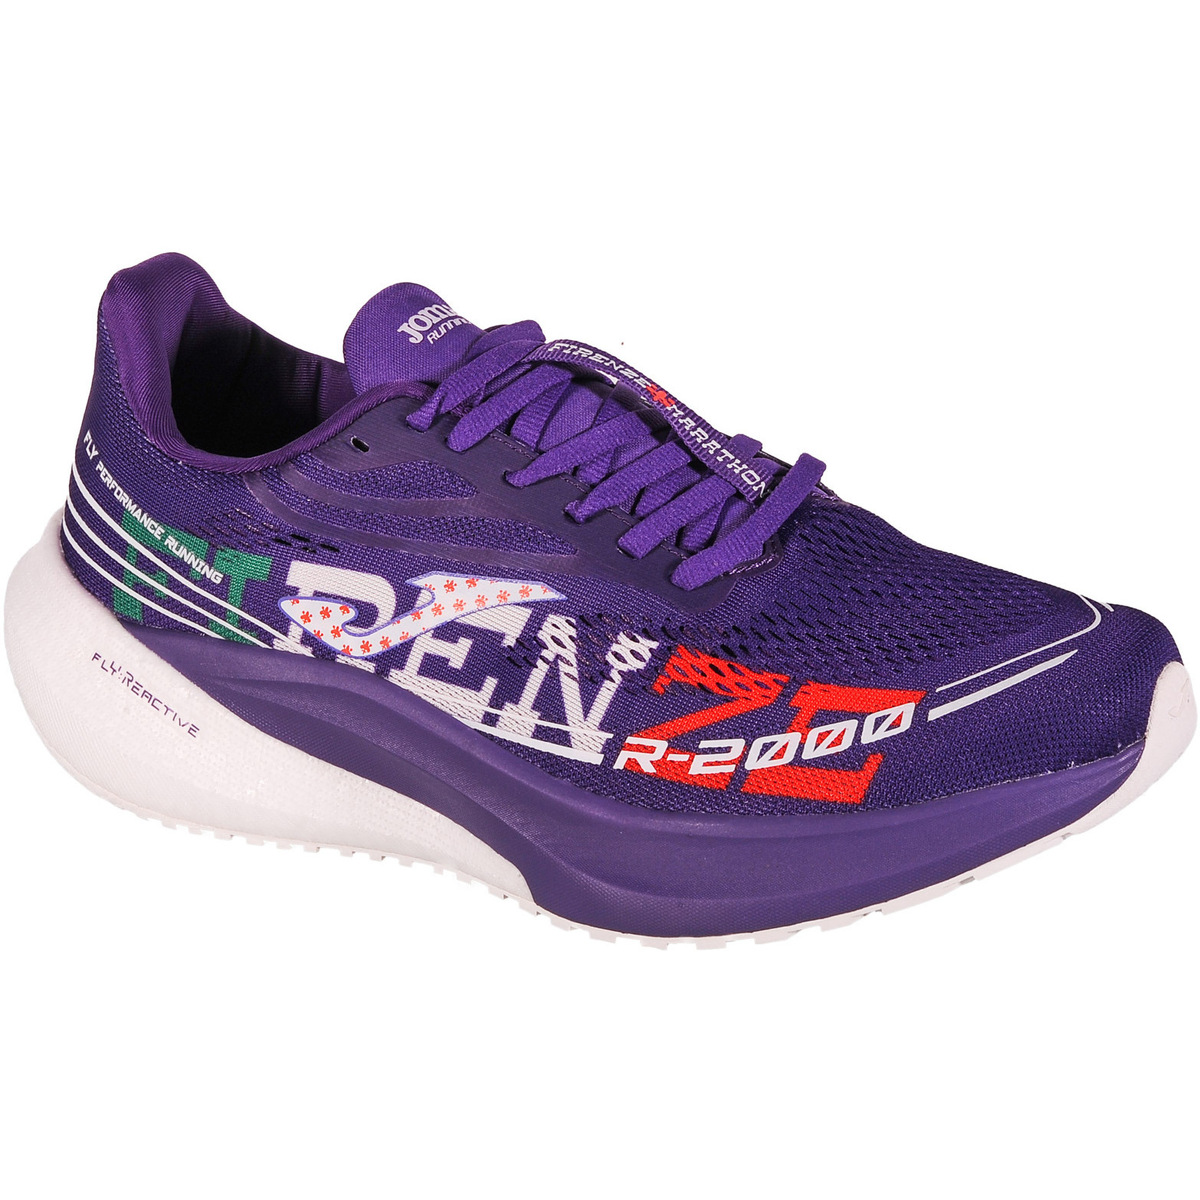 Παπούτσια για τρέξιμο Joma R.2000 23 RR200W 27367072H